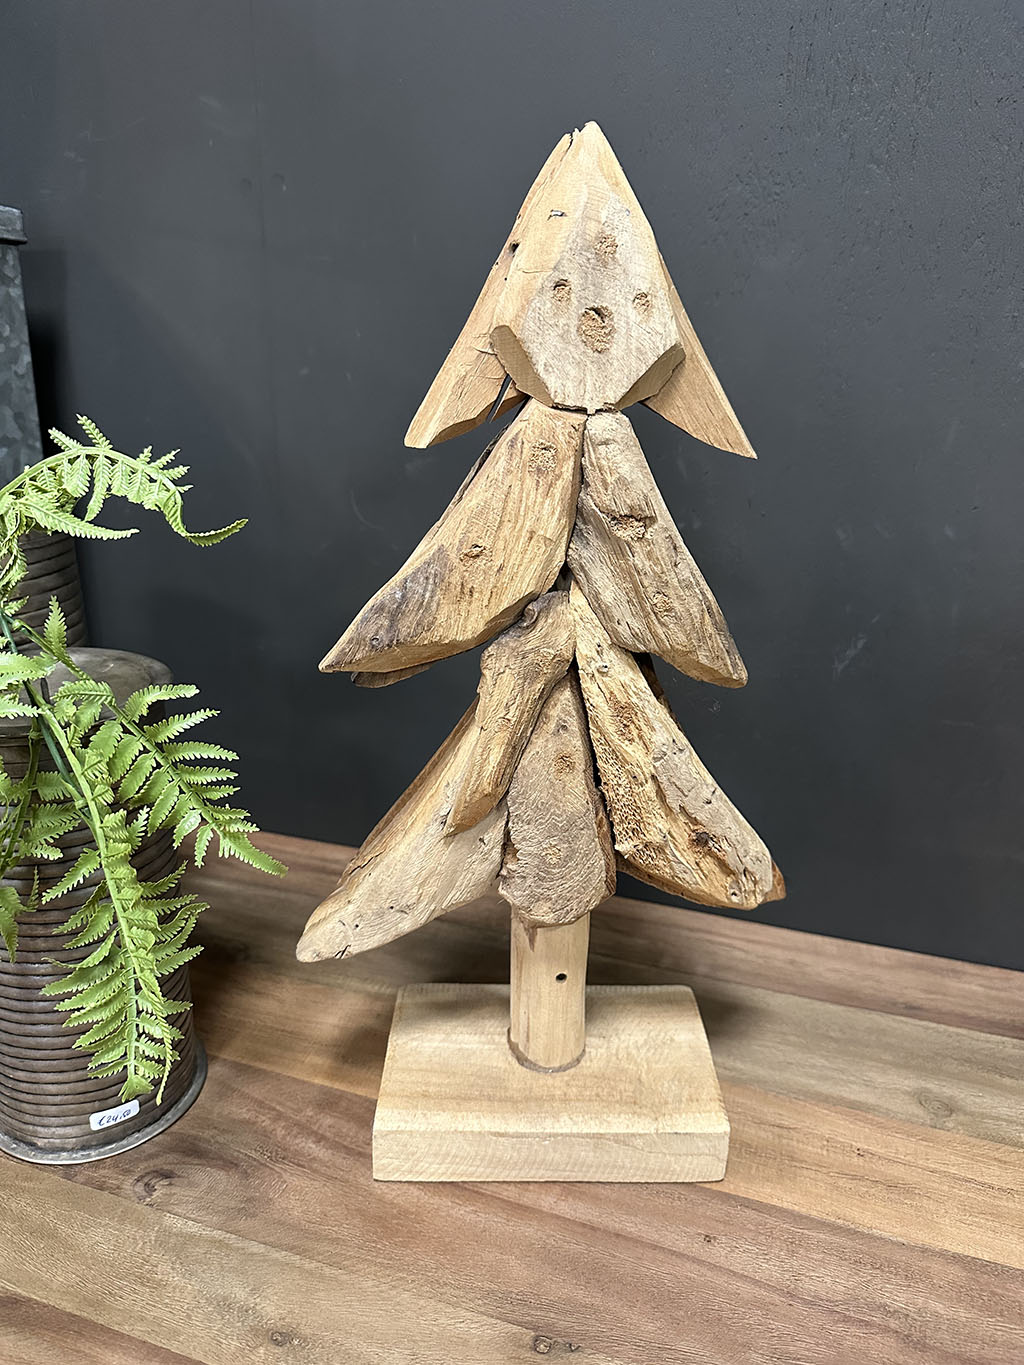 Deze houten kerstboom is gemaakt van reststukken teak echt een prachtig deco stuk!